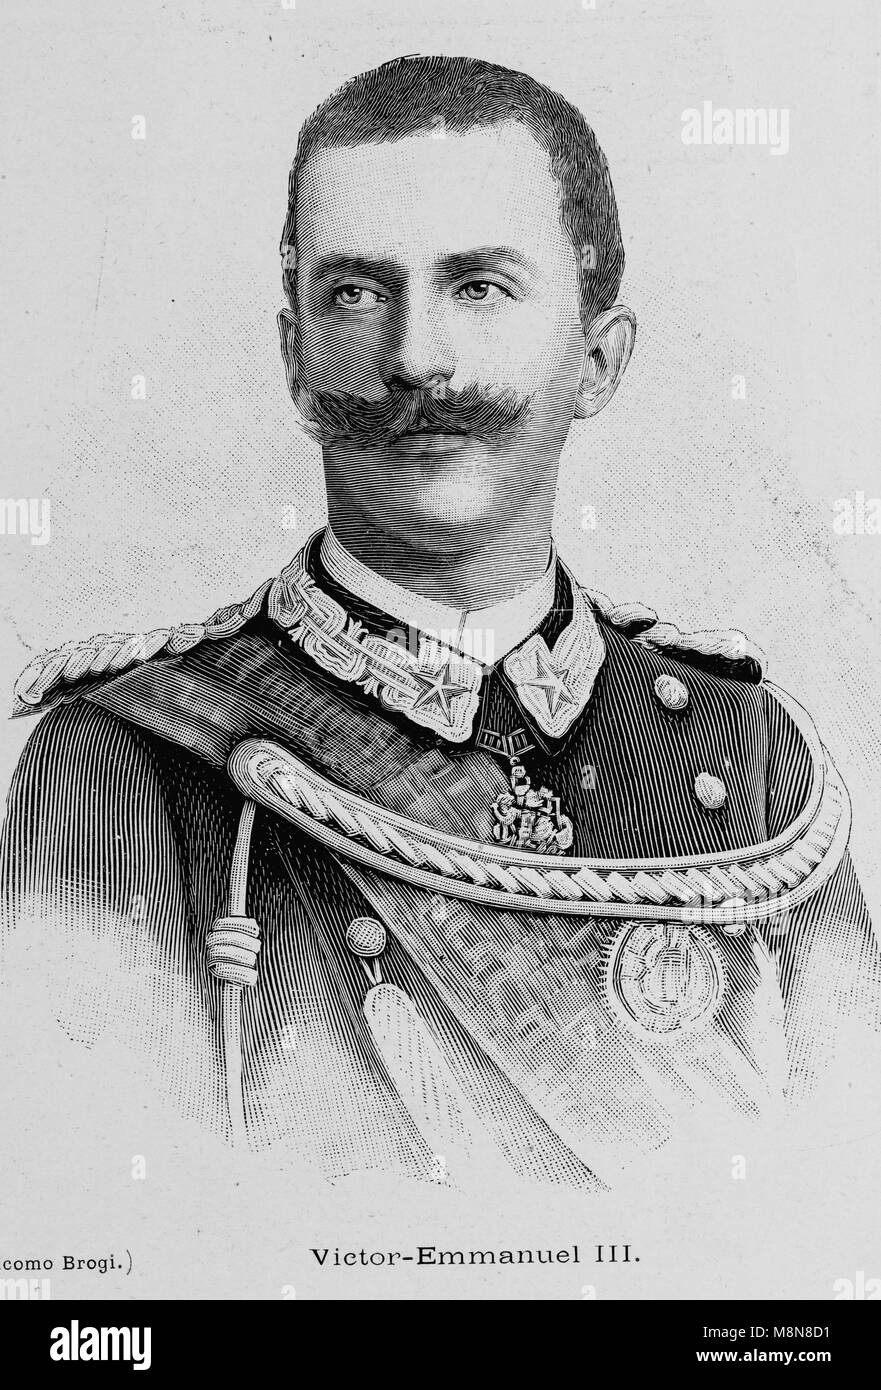 Le roi Victor Emmanuel III d'Italie, Photo de l'hebdomadaire français journal l'illustration, 4 août 1900 Banque D'Images